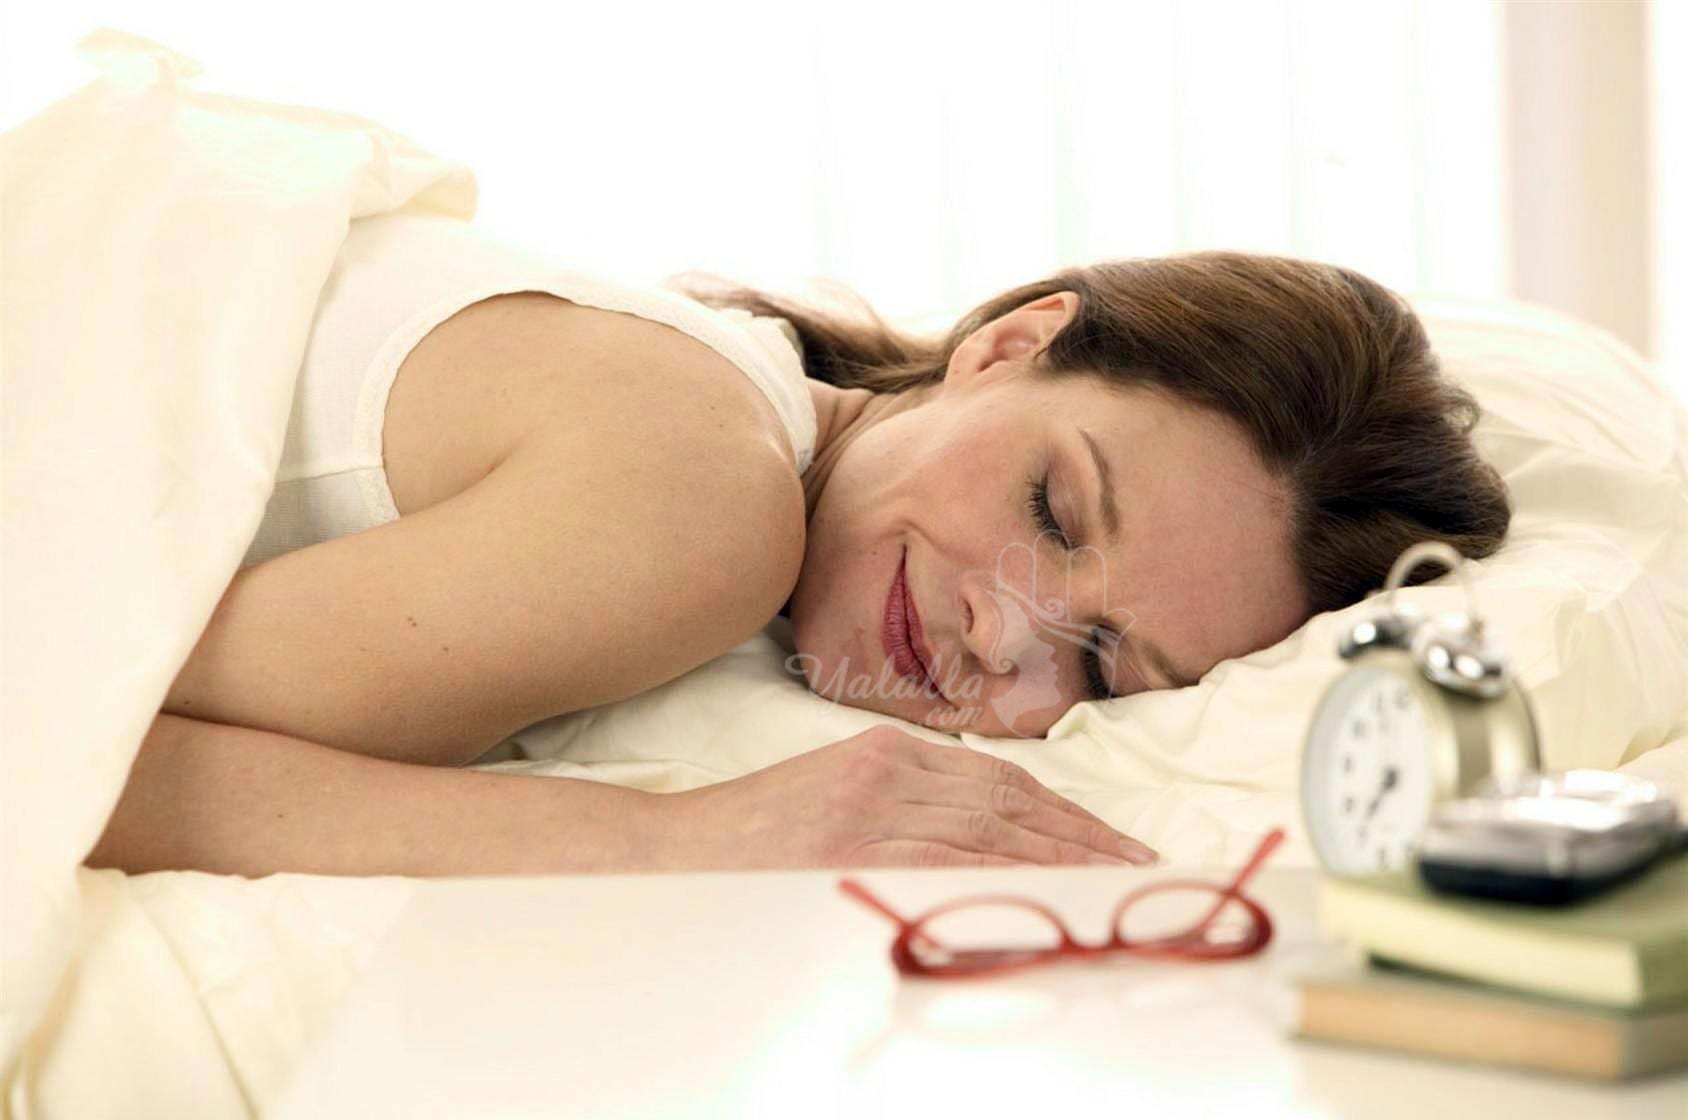 هذا ما يفعله النوم على البطن أمر خطير خصوصا على النساء